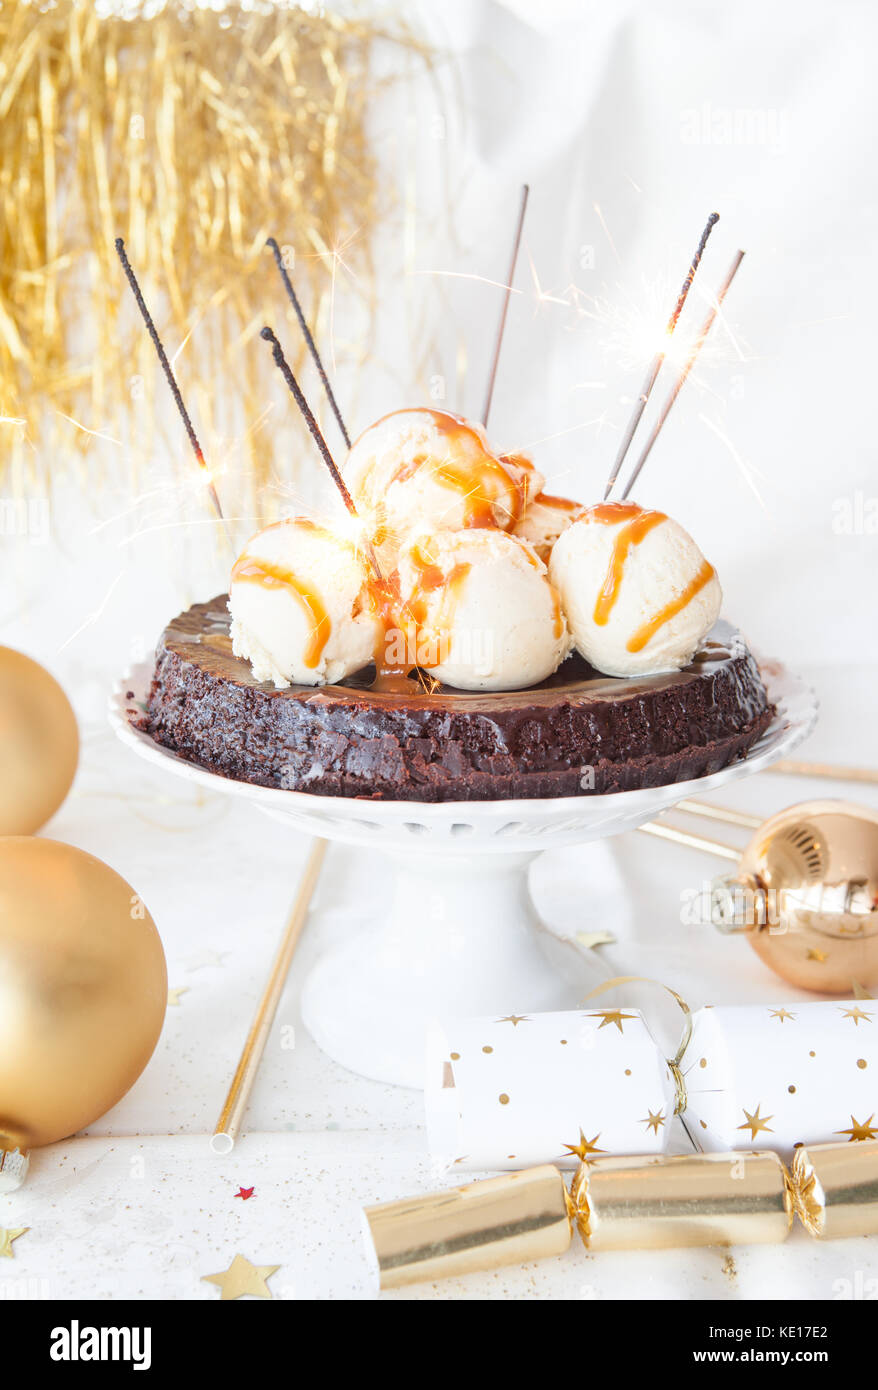 Gâteau au chocolat pour une ambiance festive soirée du nouvel an Banque D'Images